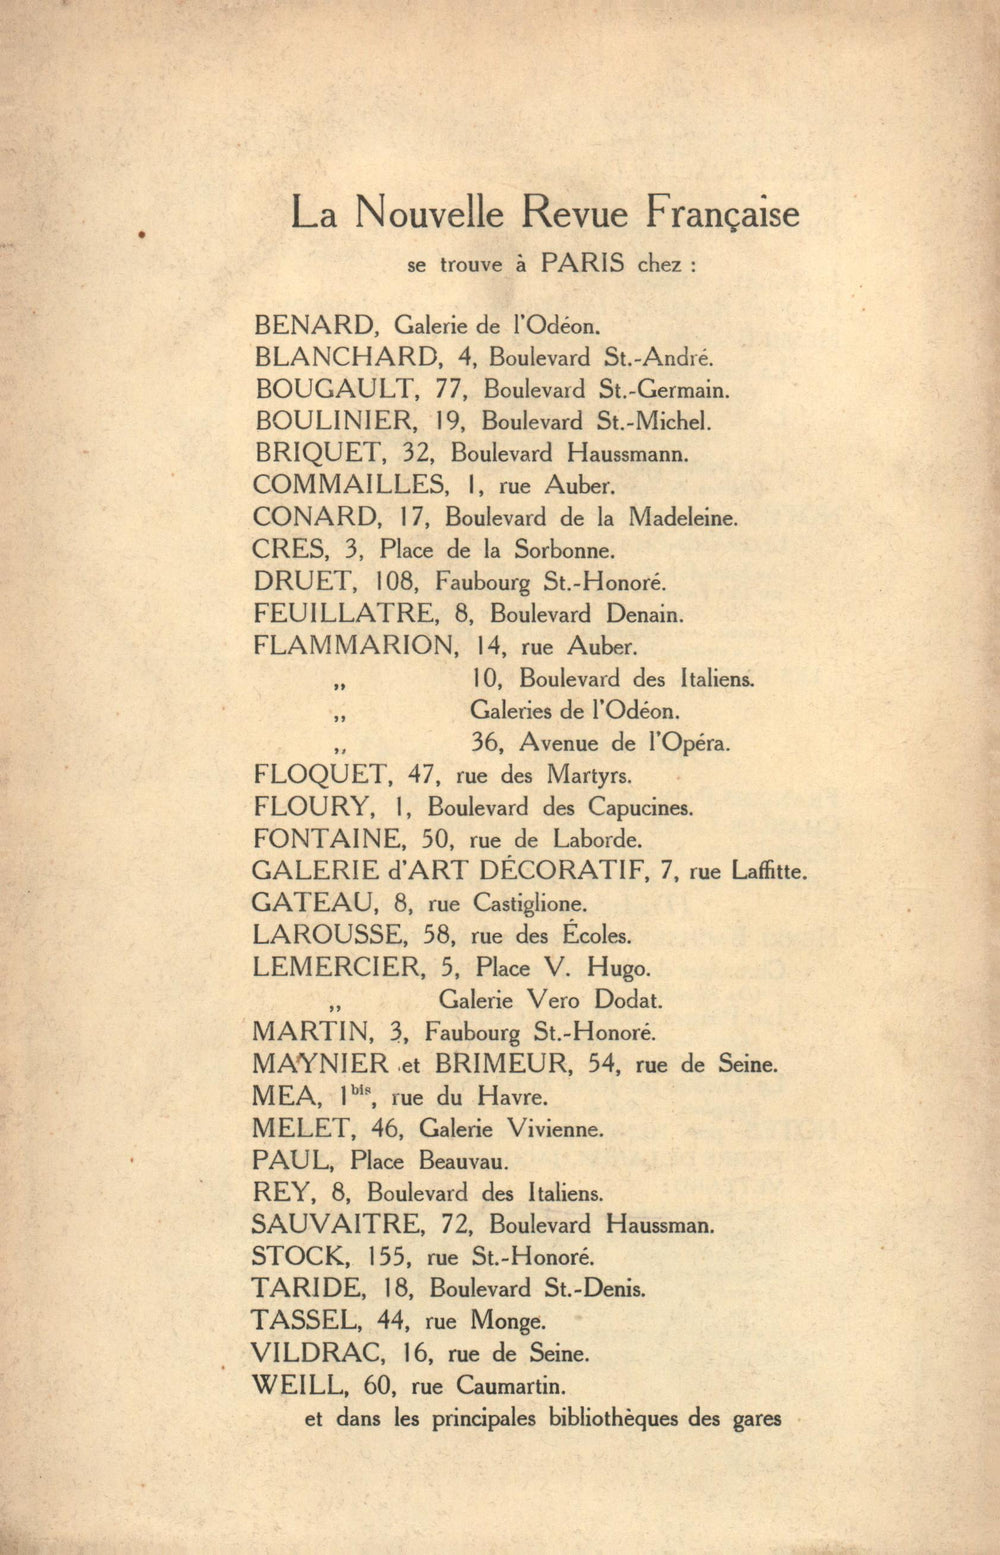 La Nouvelle Revue Française N' 44 (Aoűt 1912)